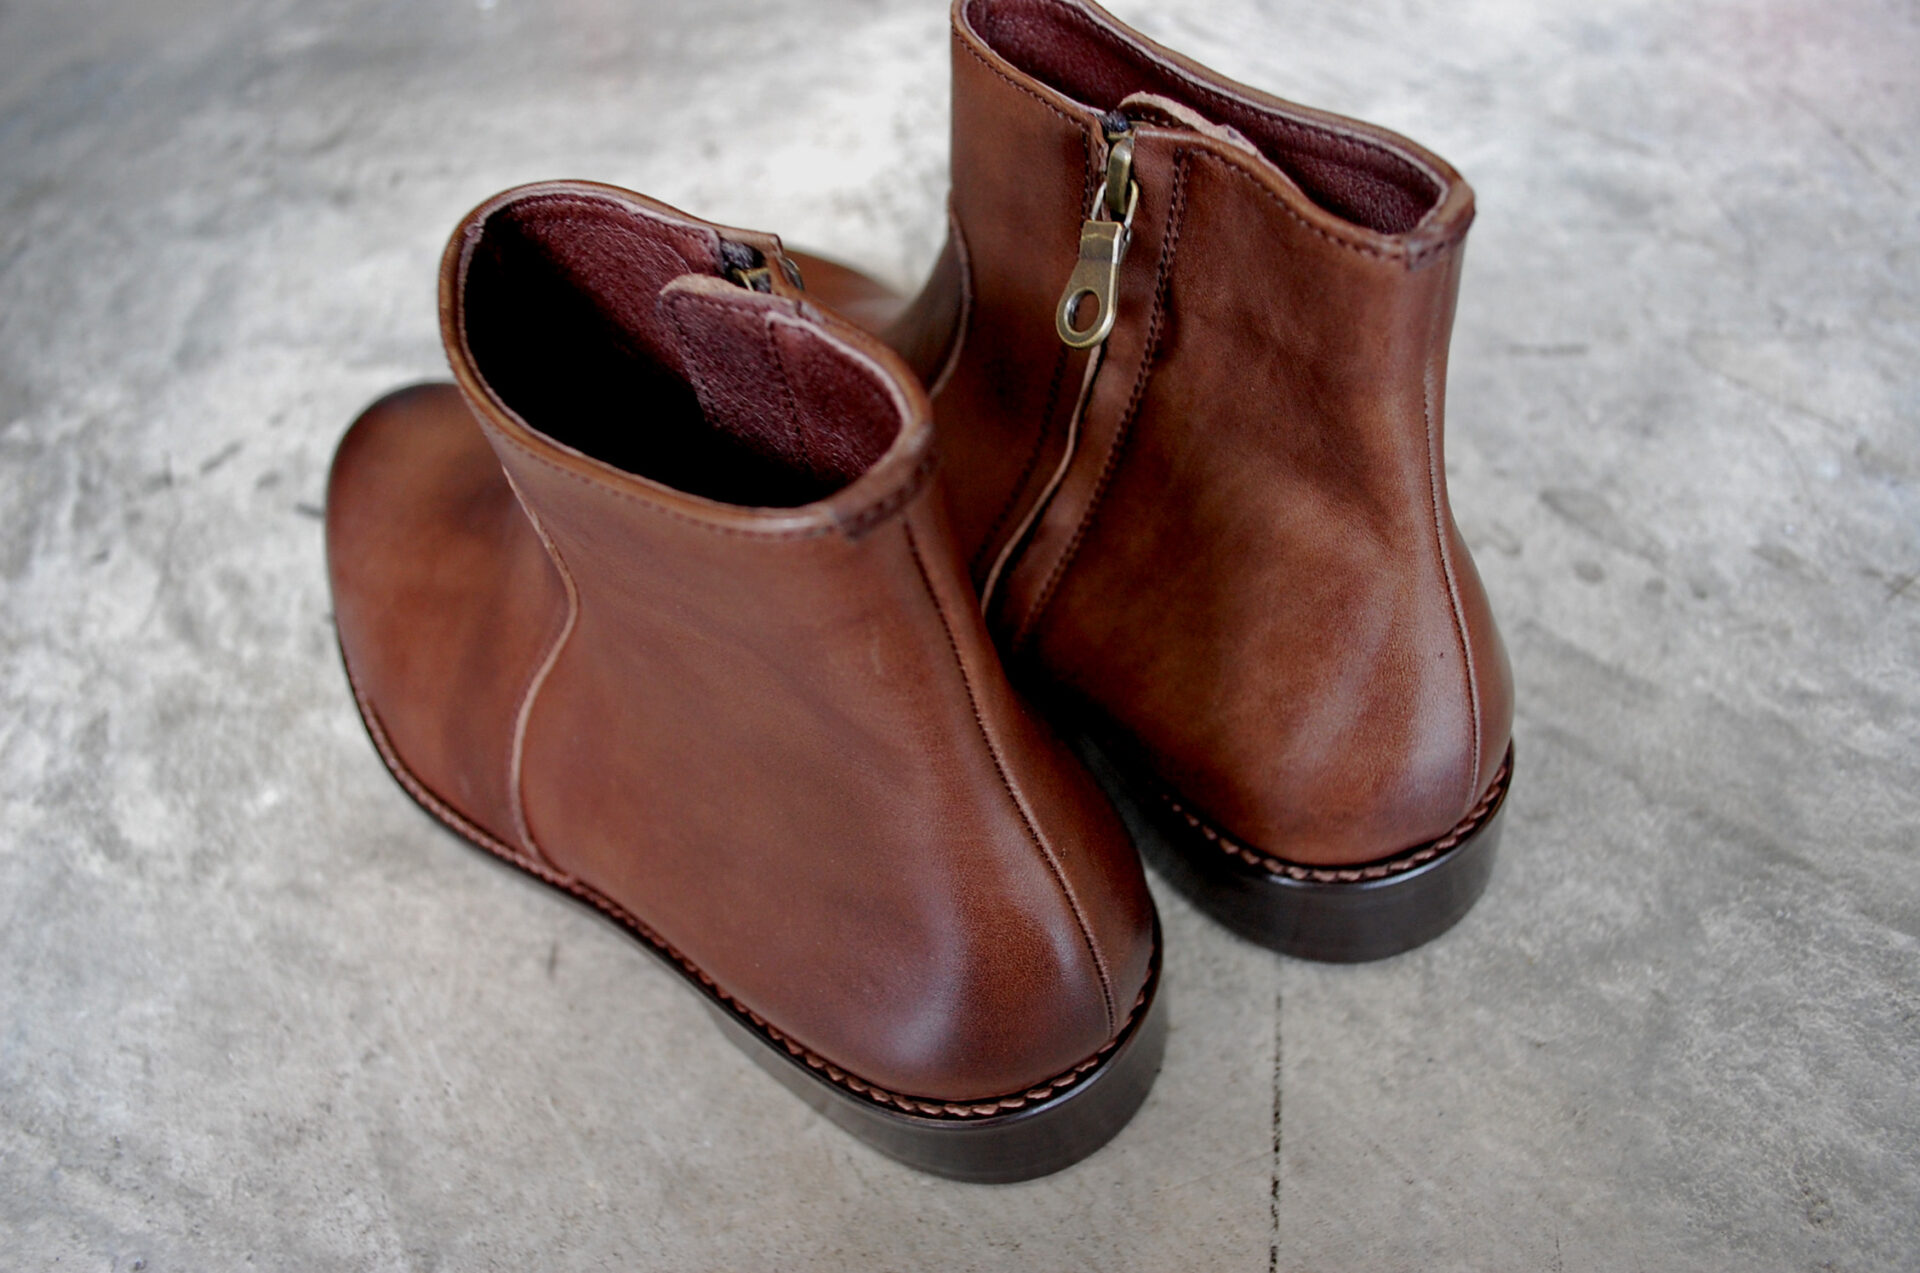 PADRONE RAUL ブーツ 40 deep brown パドローネ ラウル - 靴